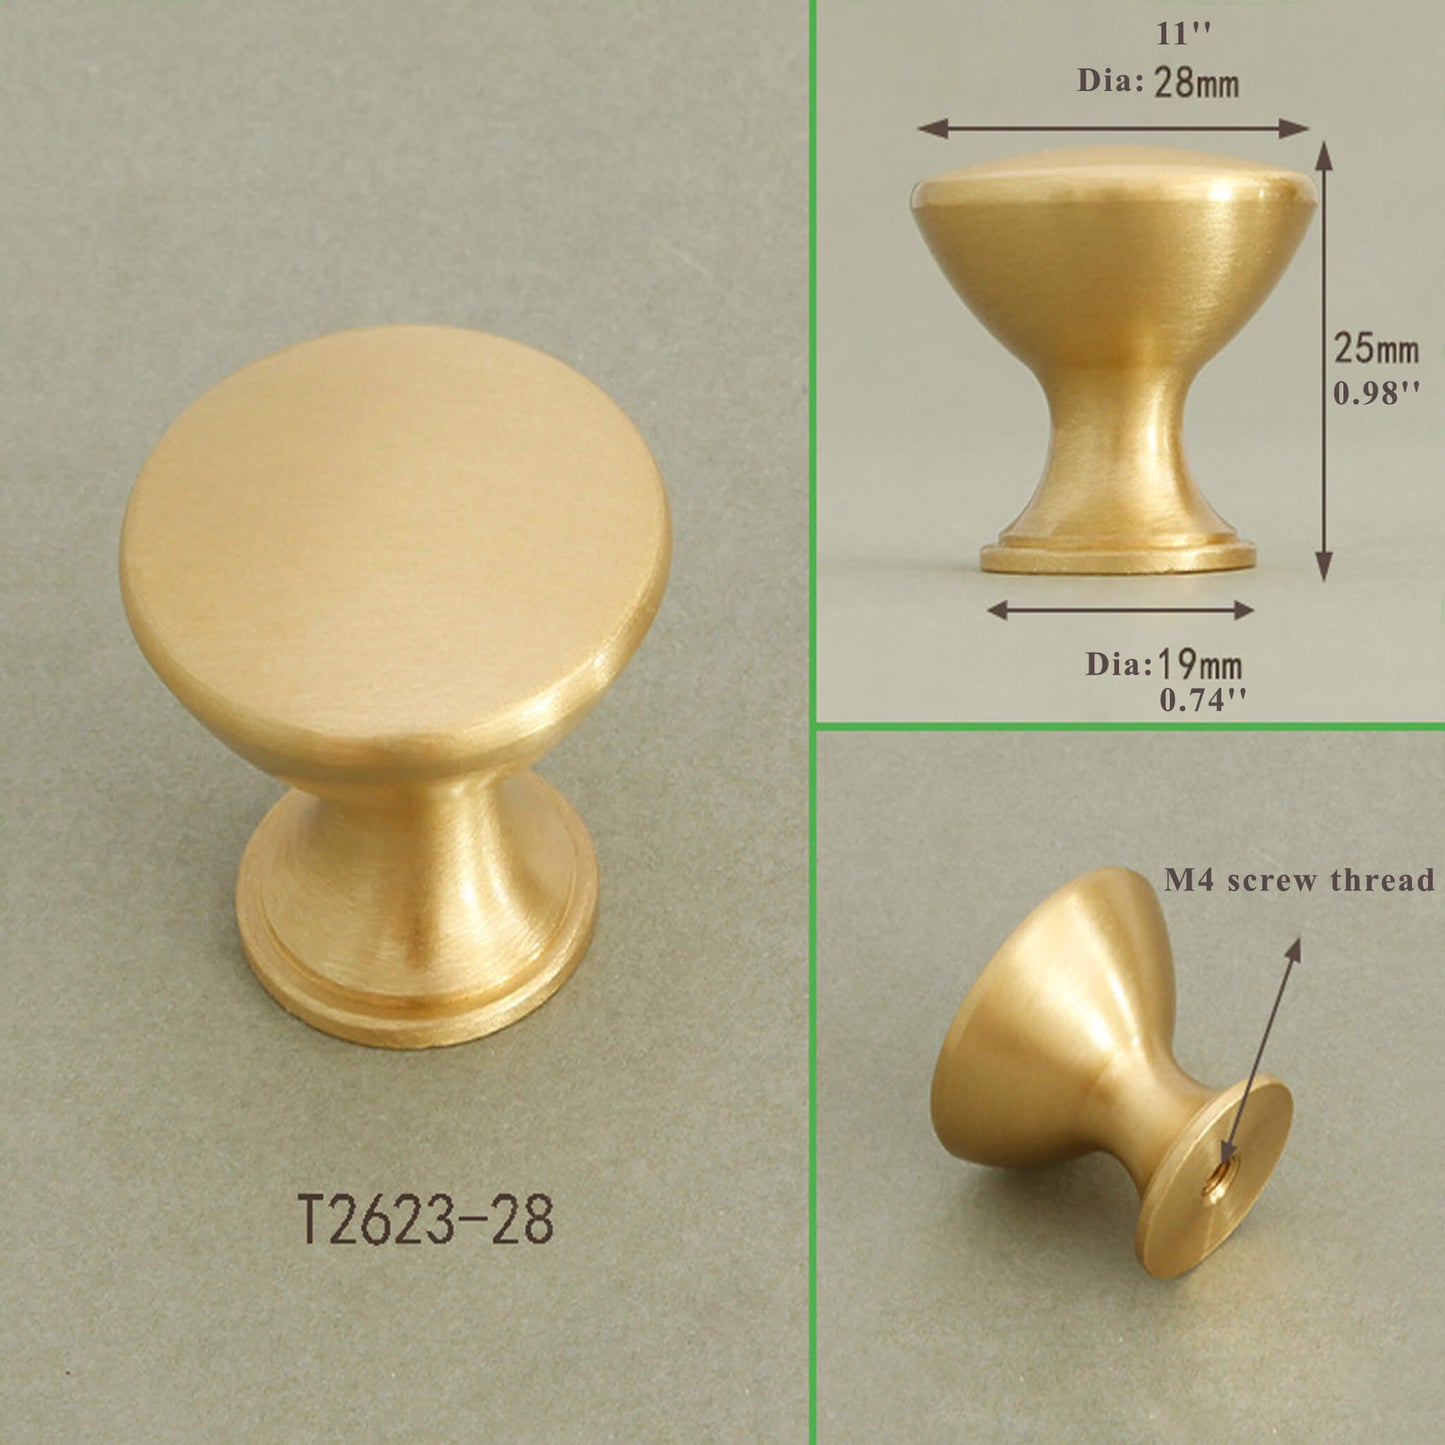 Brass Cabinet Furniture Knobs